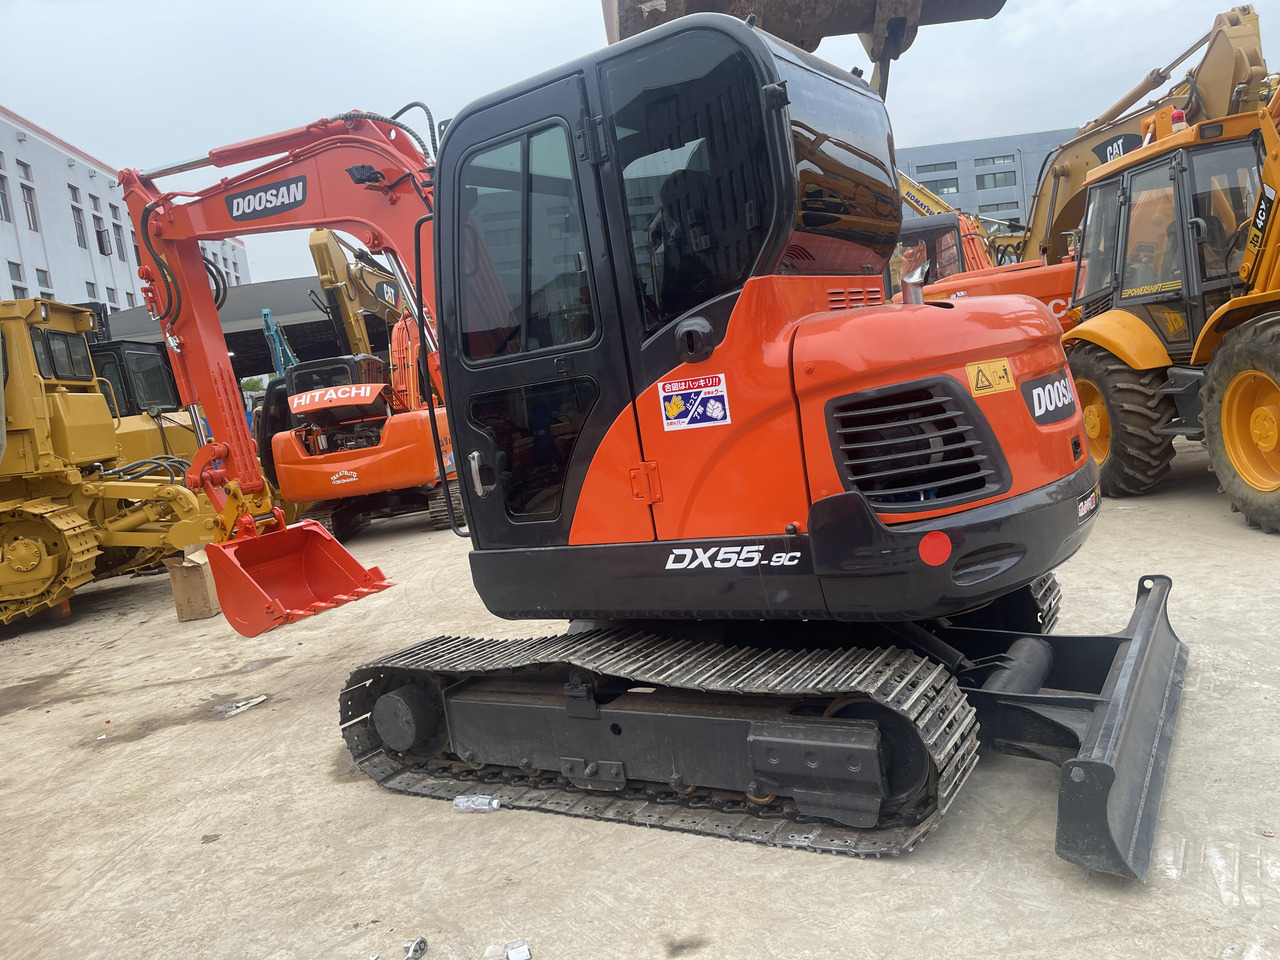 Гусеничный экскаватор Used excavator Doosan DX55-9C on sale: фото 9